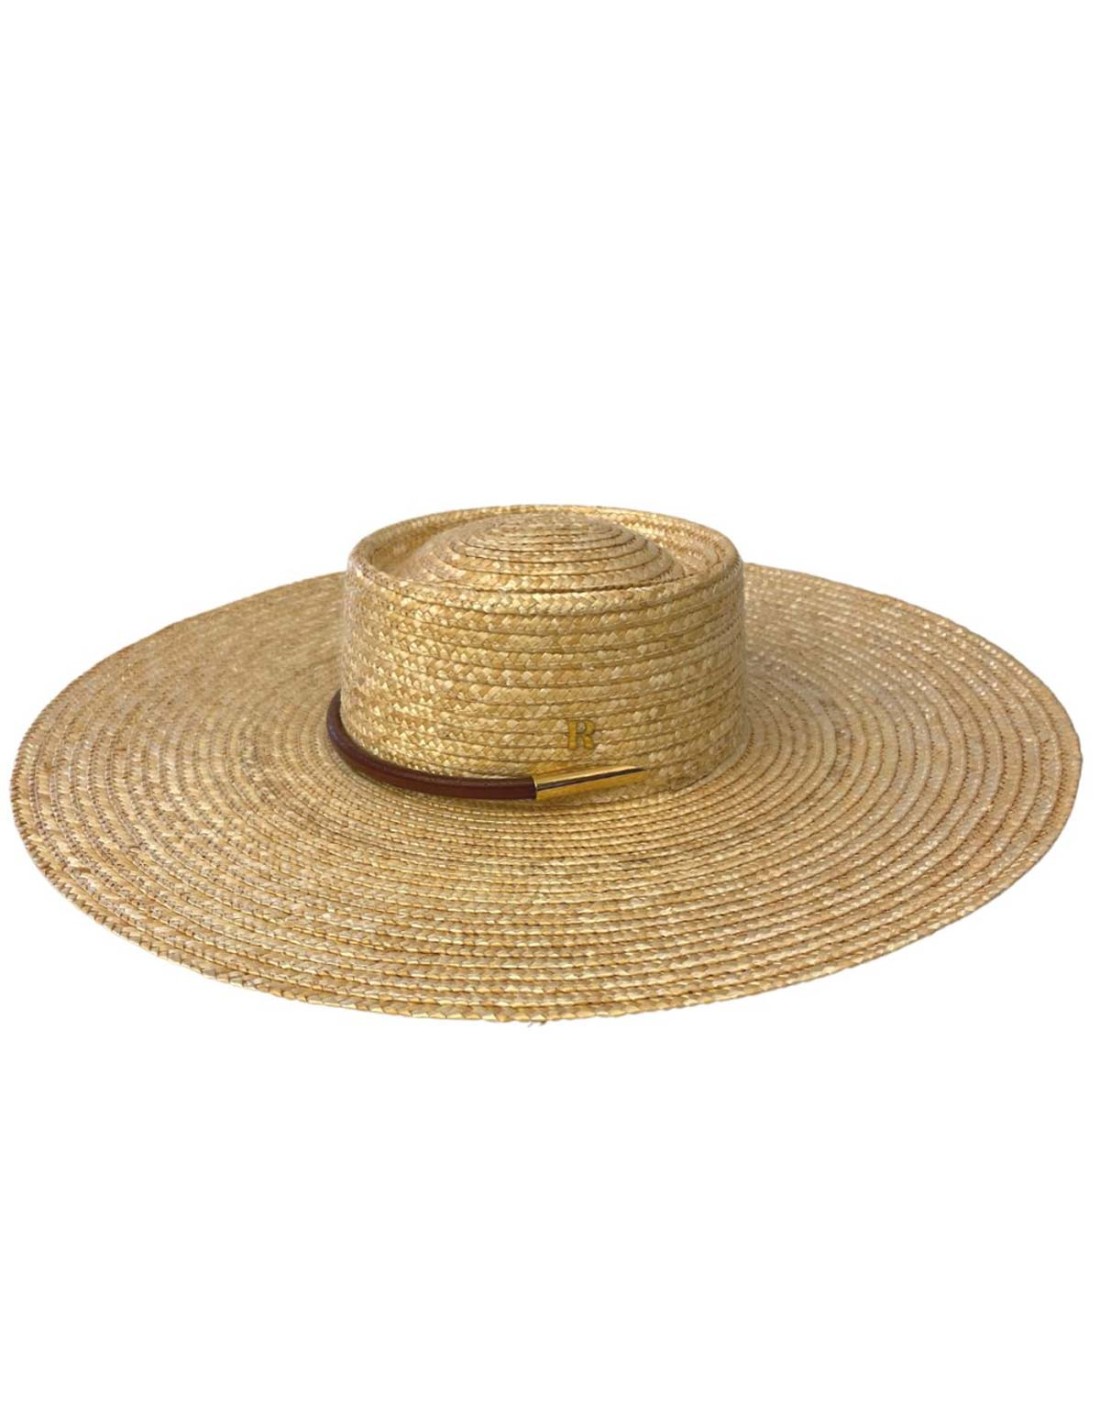 Chapeau de cortège style Empire en paille naturelle fabriqué en France